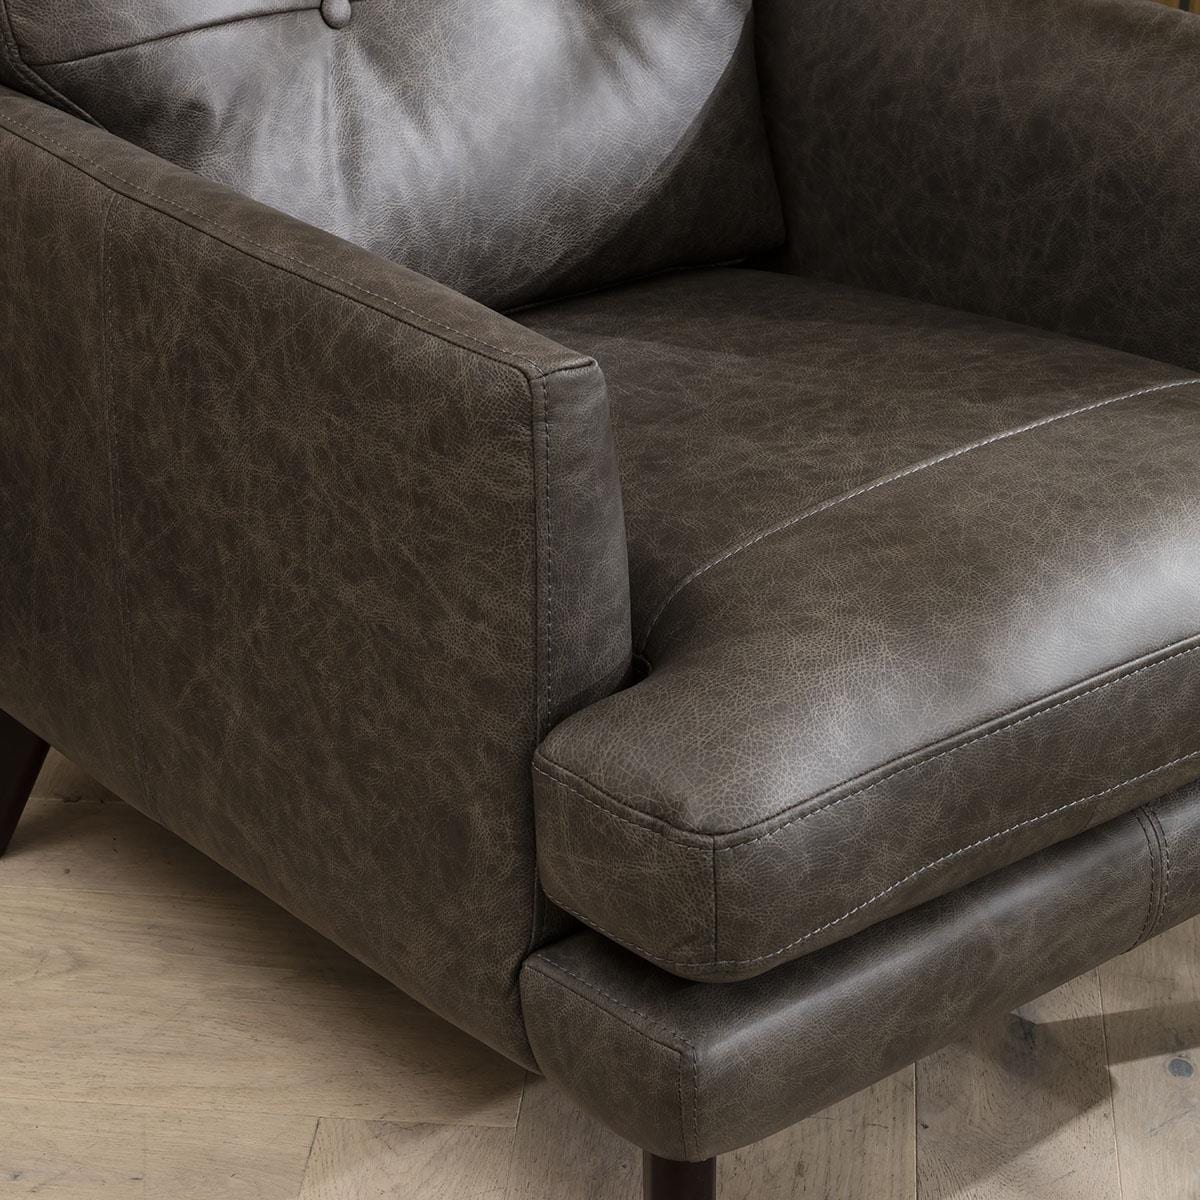 Quatropi Quatropi 2 Seater Premium Leather Sofa - Real Leather Options - 170cm